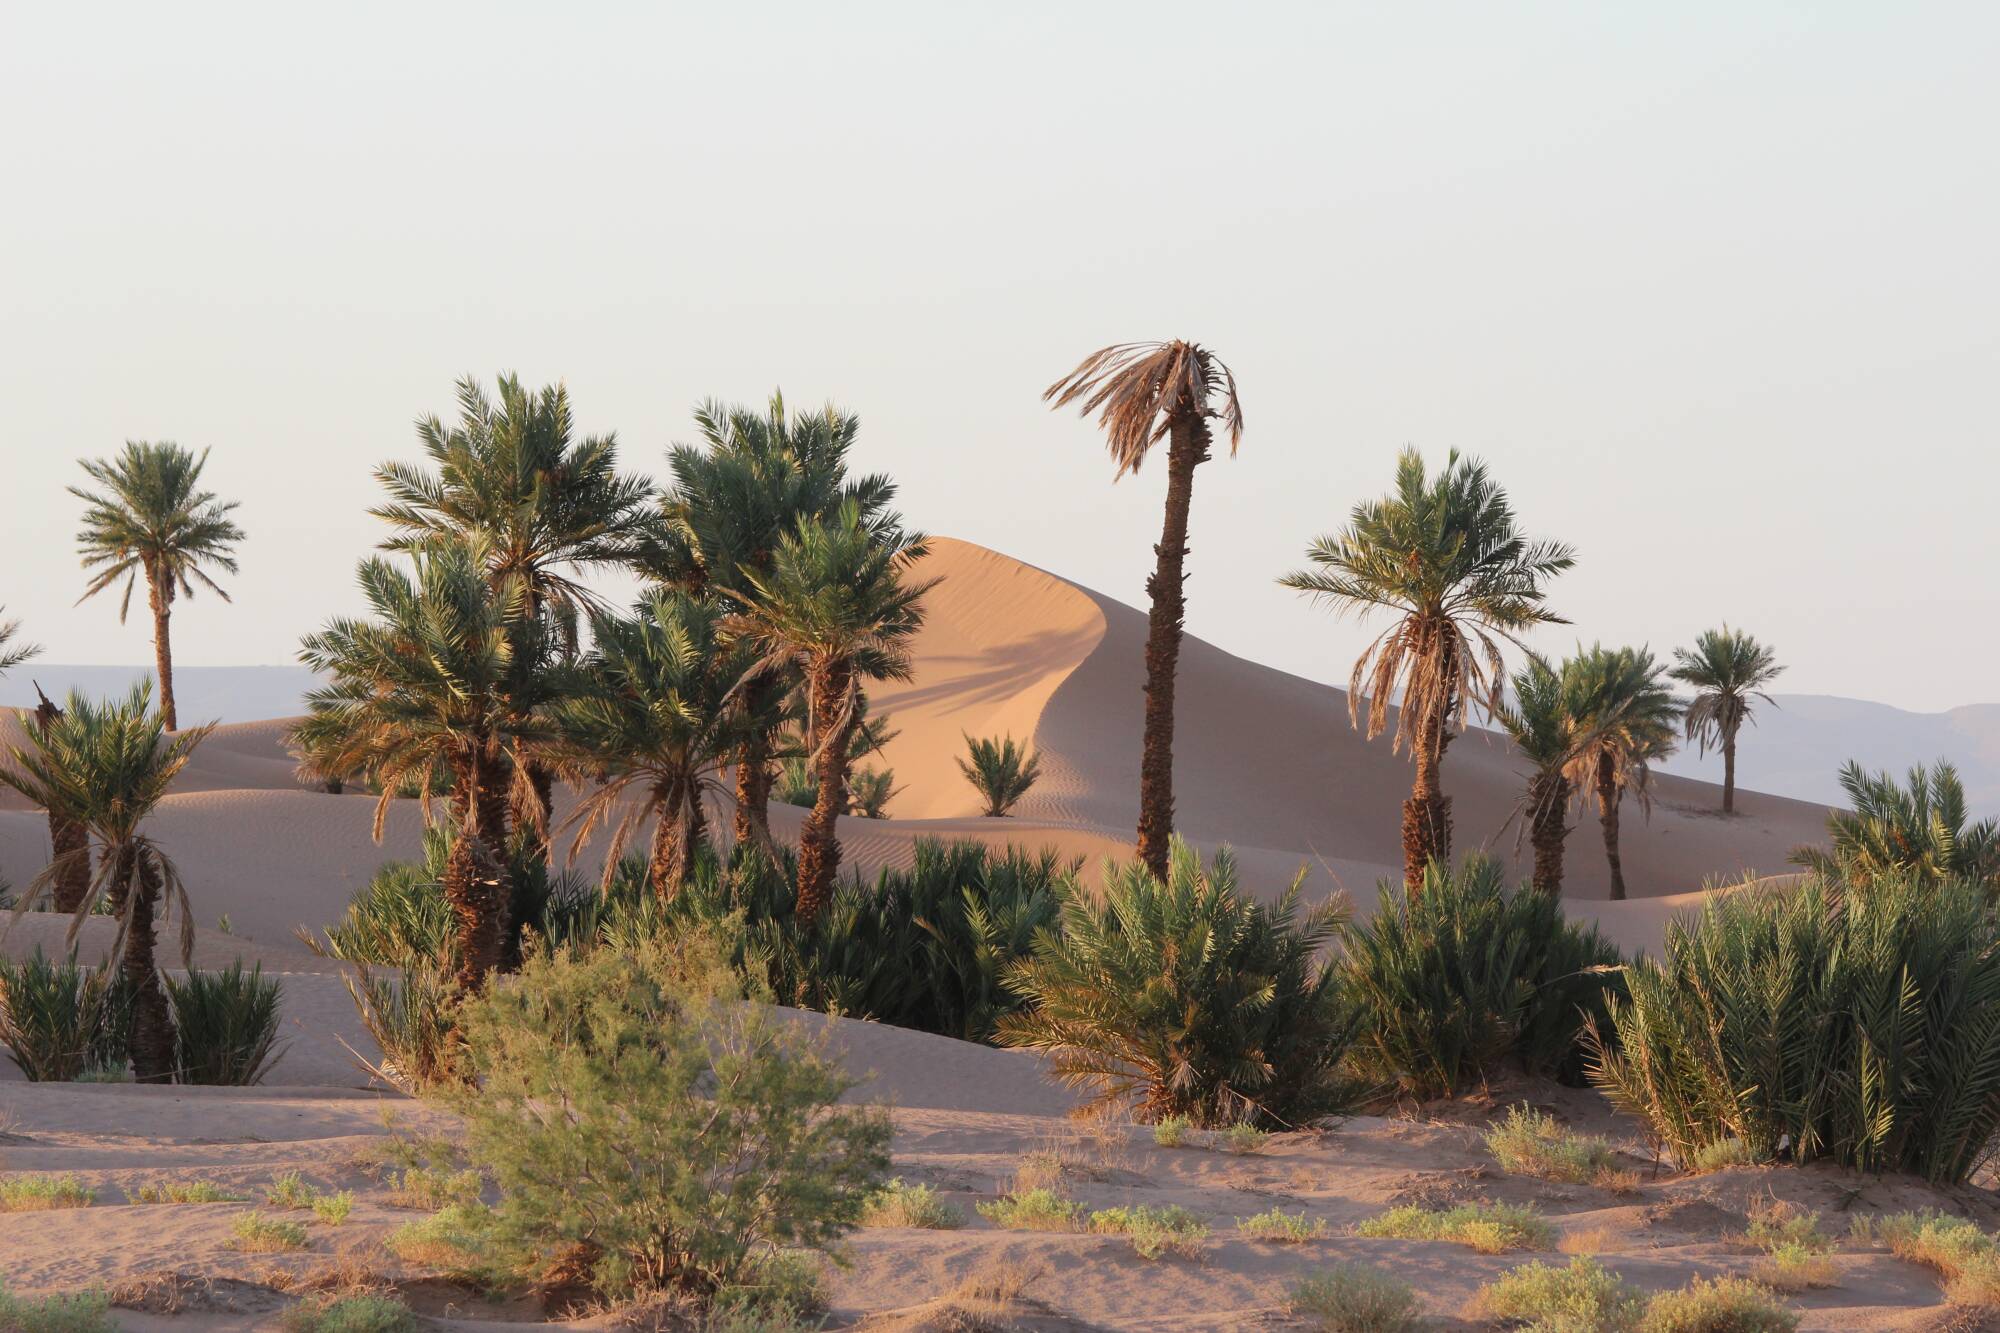 Il Deserto